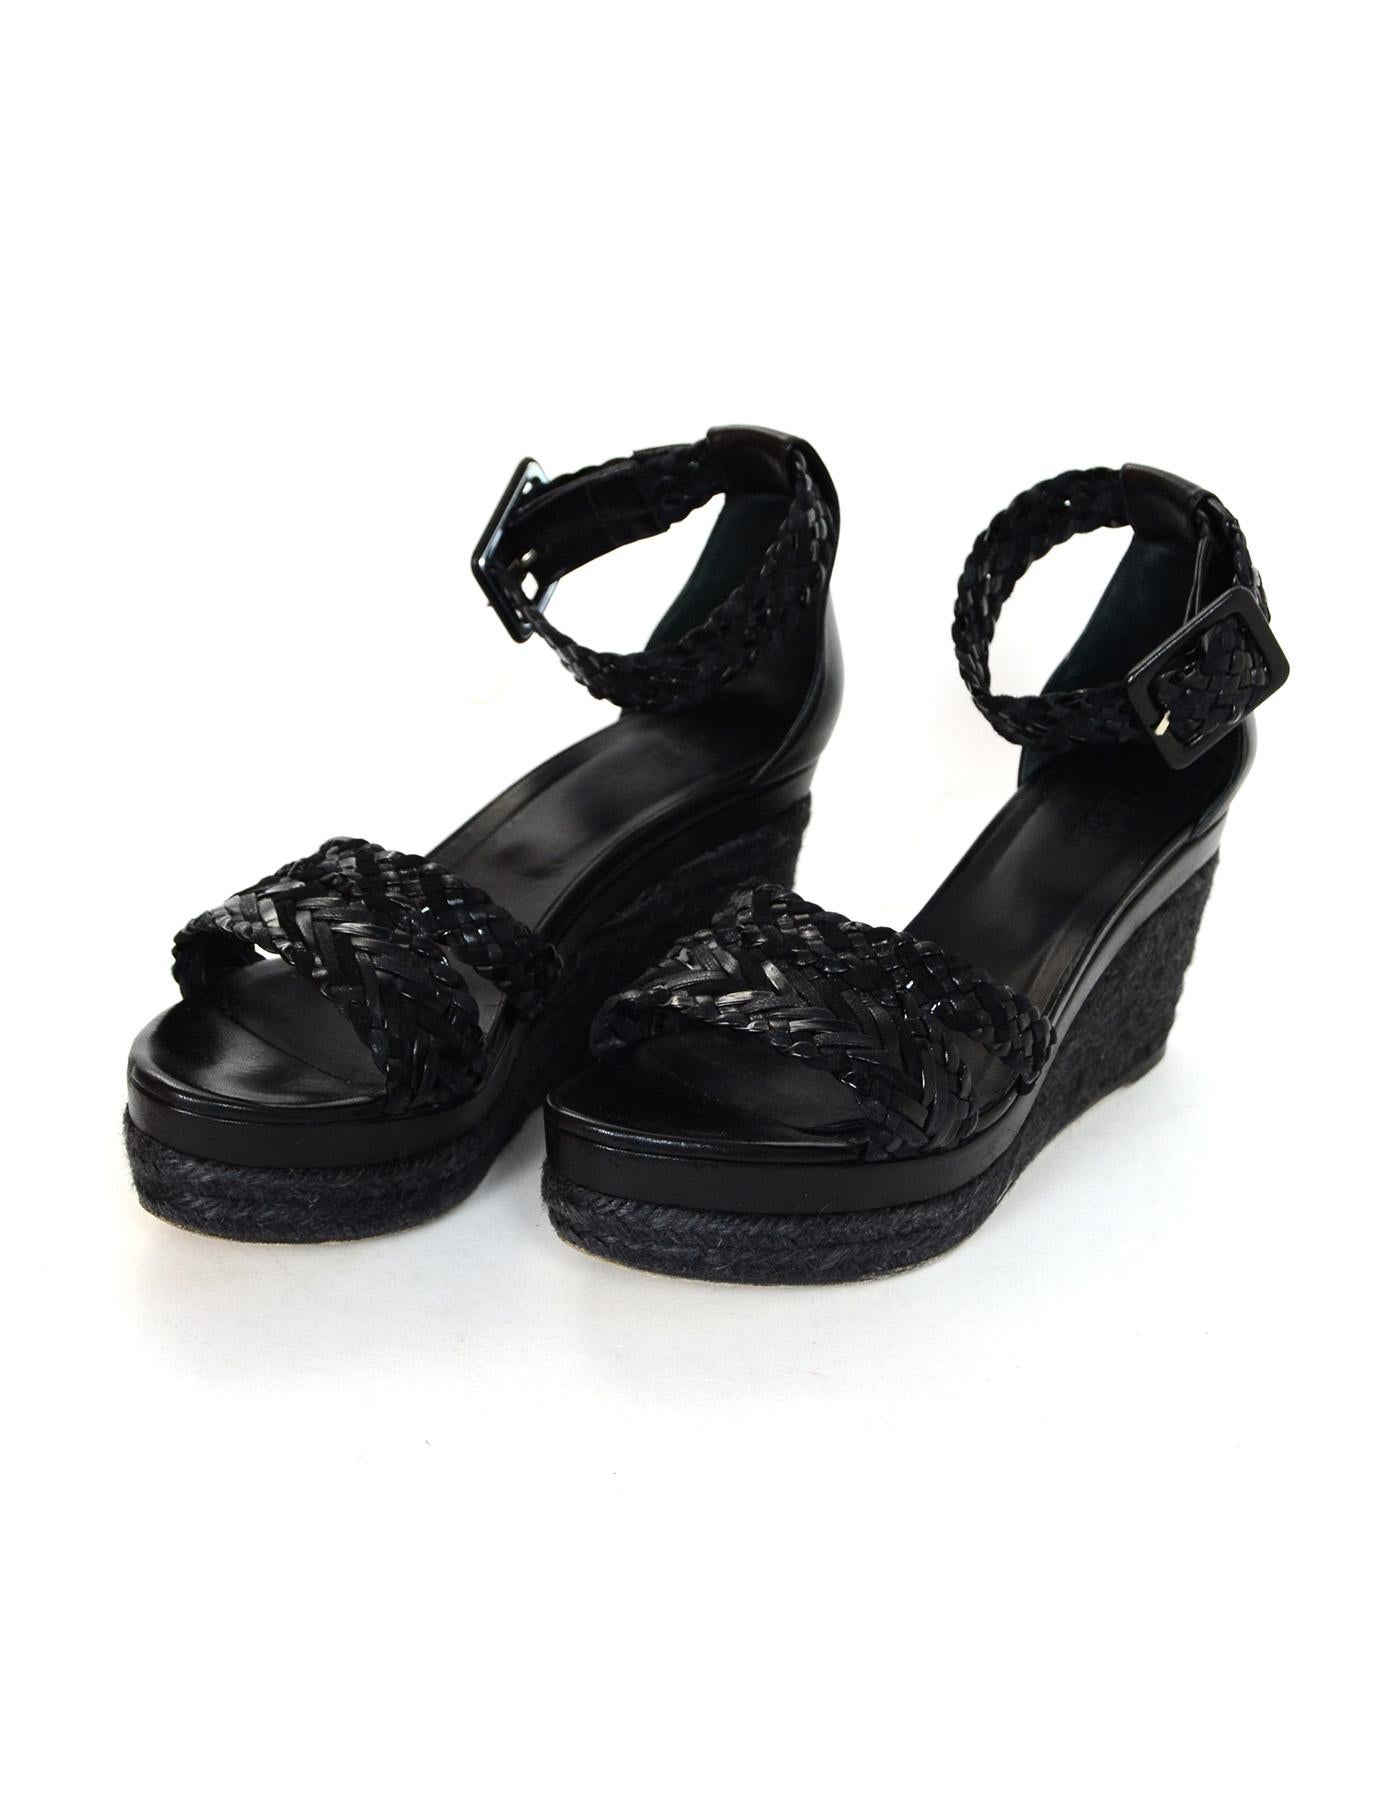 black woven sandals